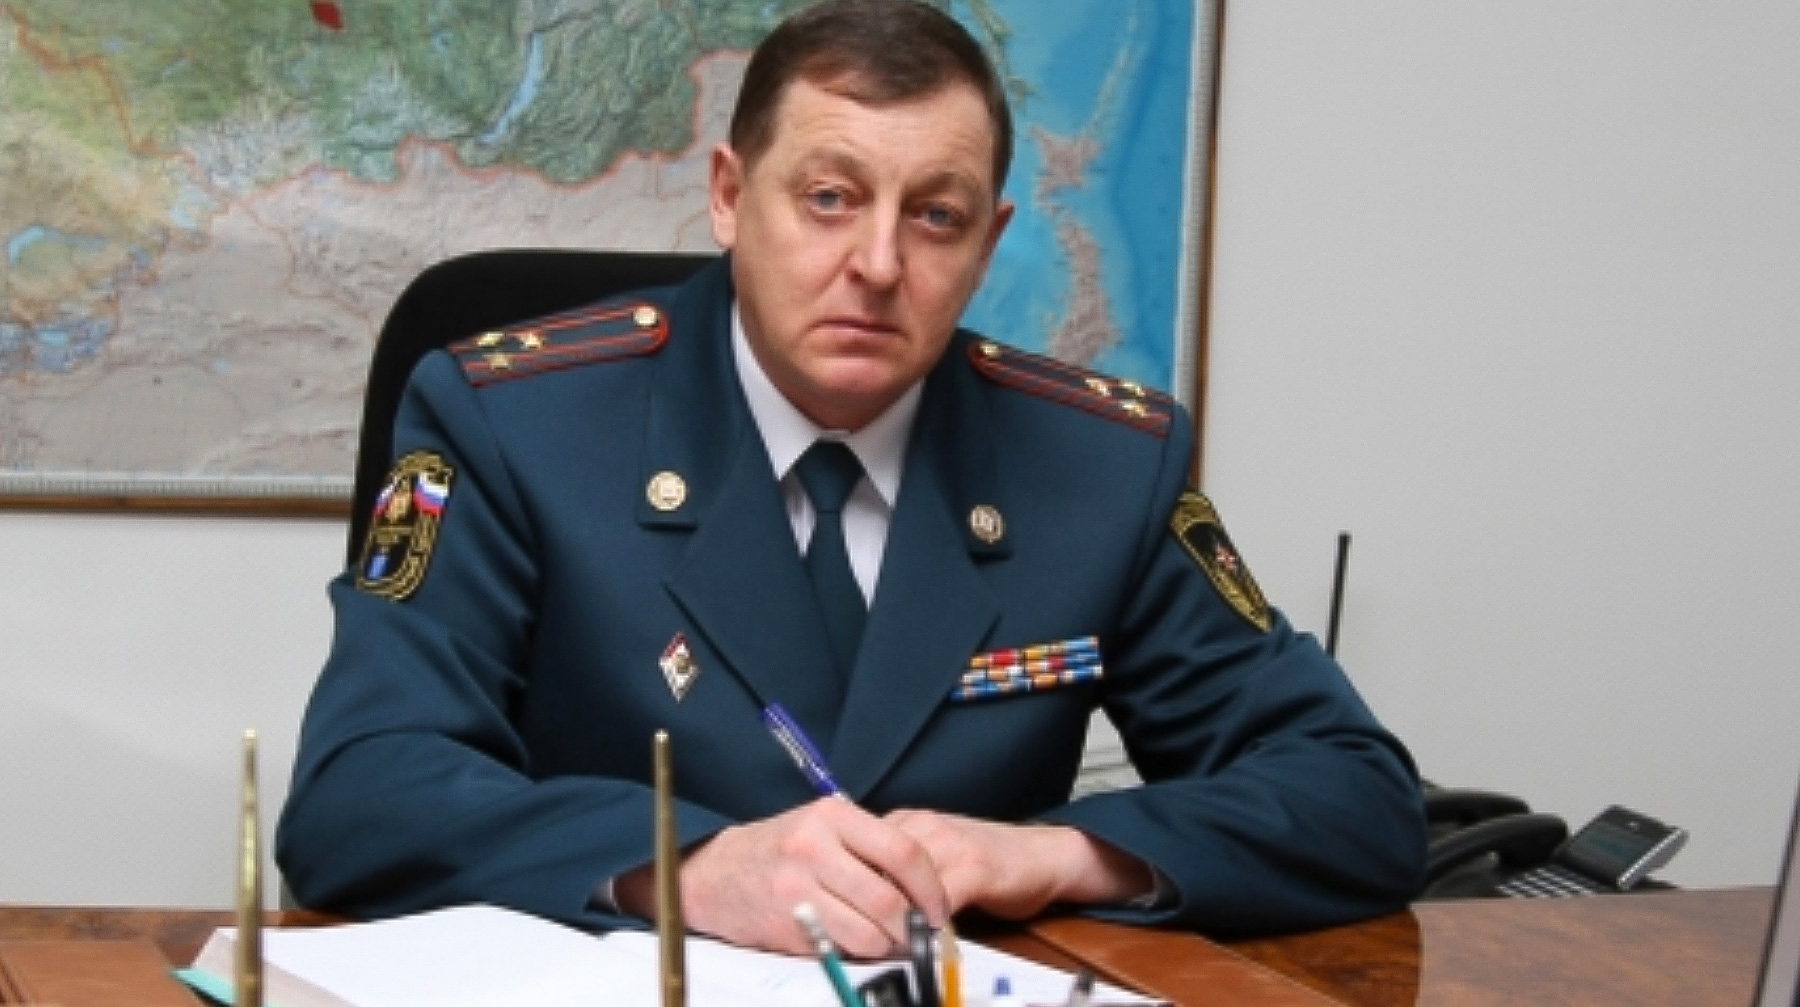 Игорь Качев занимал кресло главы регионального отделения спасательного ведомства с 2013 года undefined